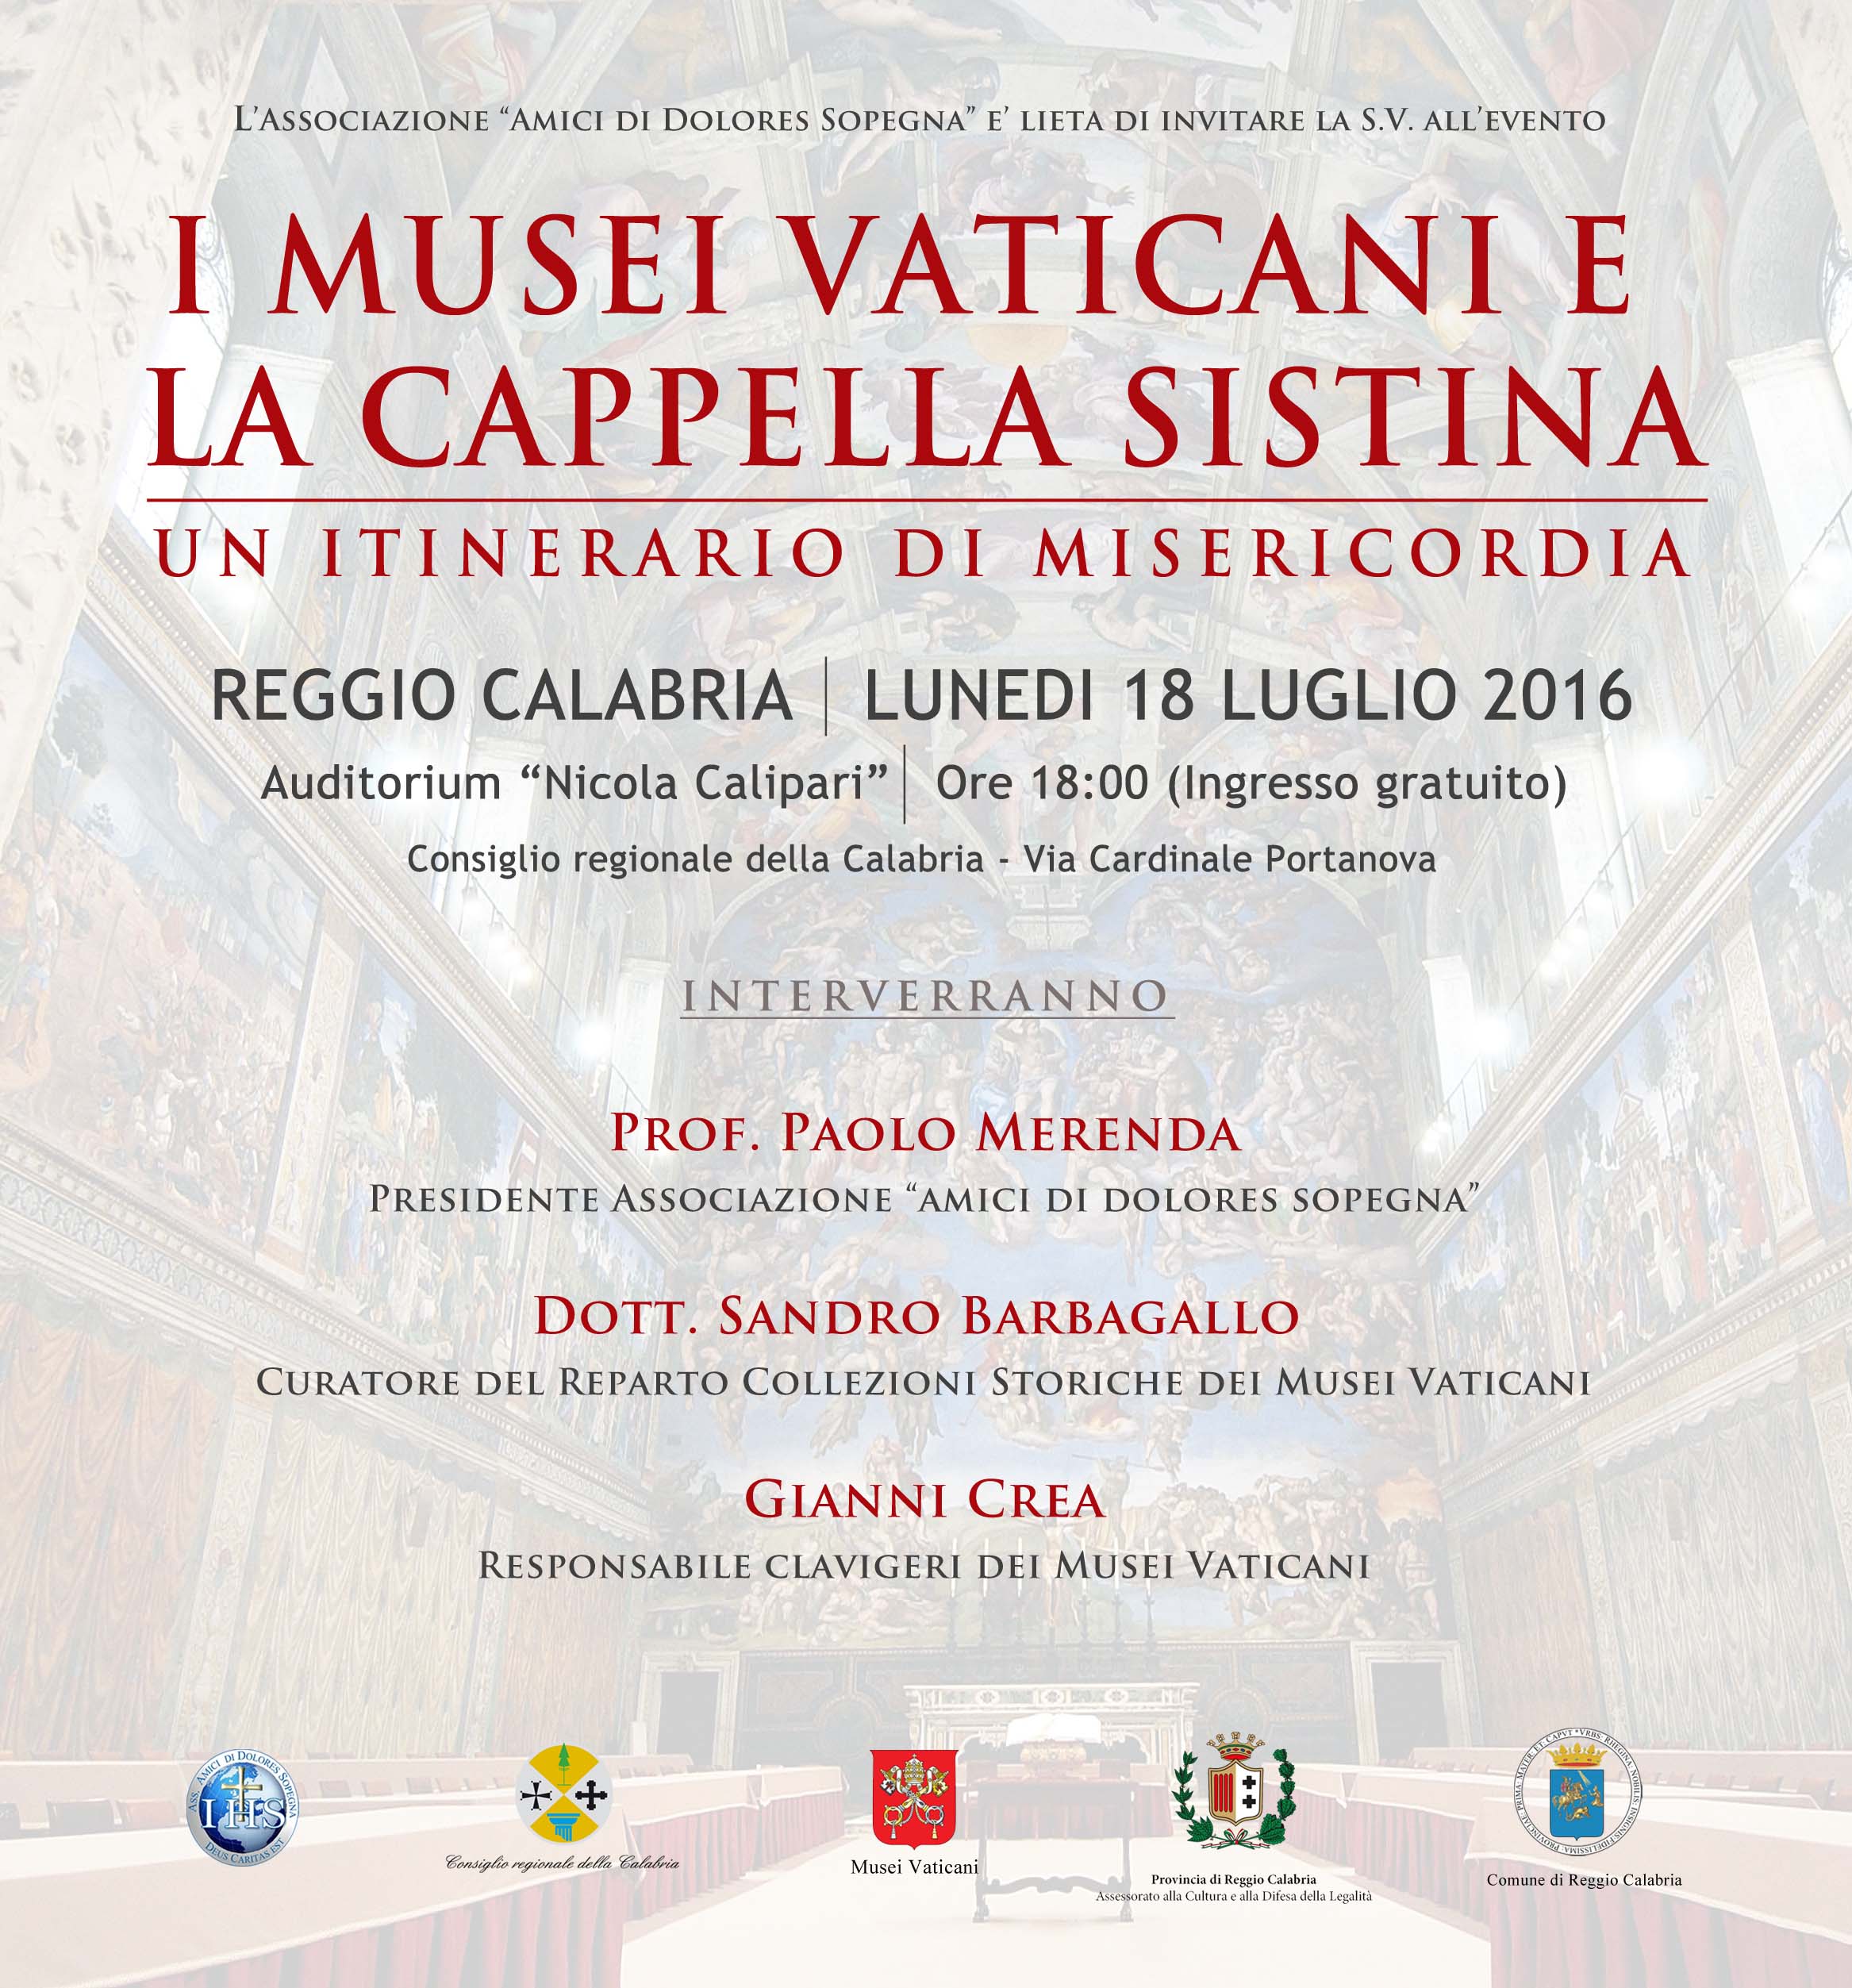 Invito Musei Vaticani